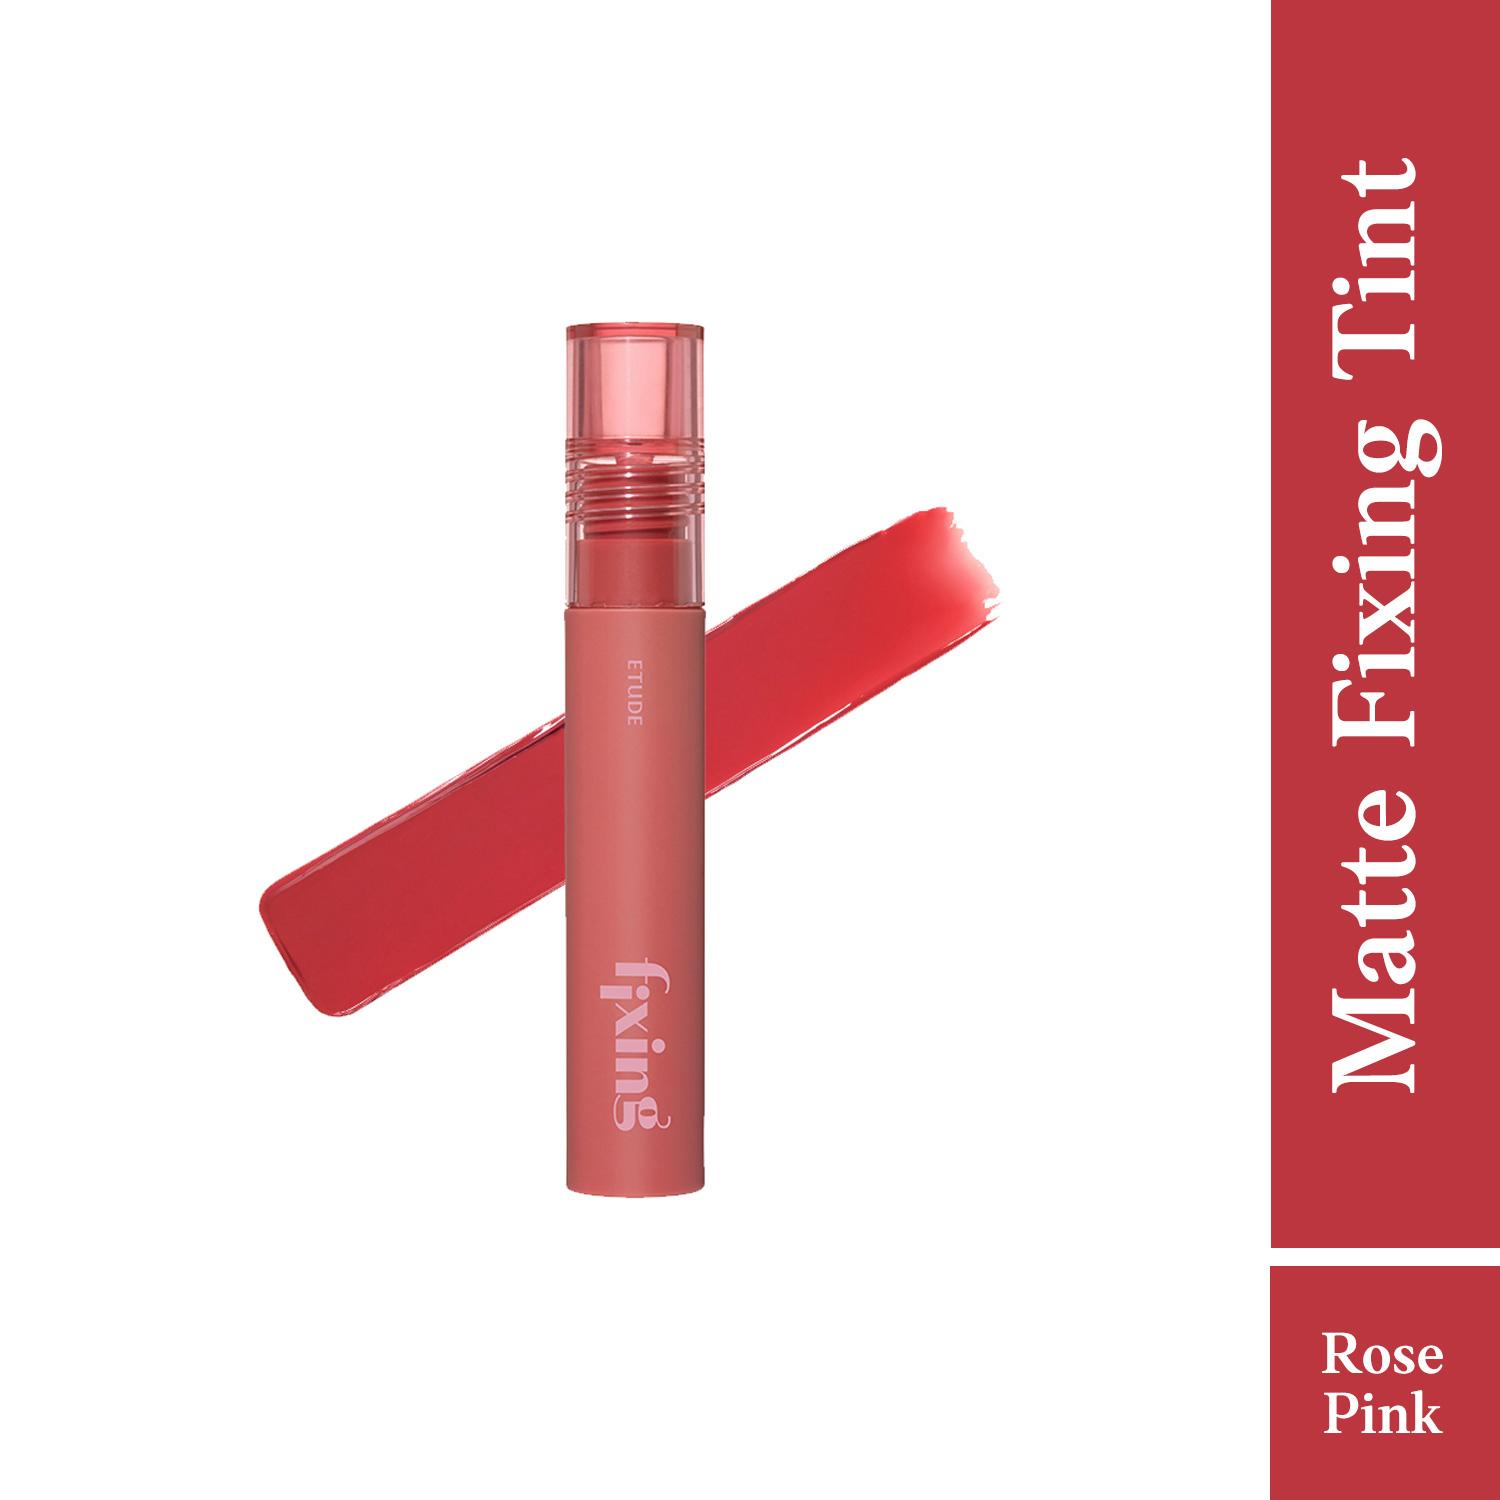 ETUDE HOUSE | ETUDE HOUSE Fixing Tint Lipstick #01 - Analog Rose (4 g)